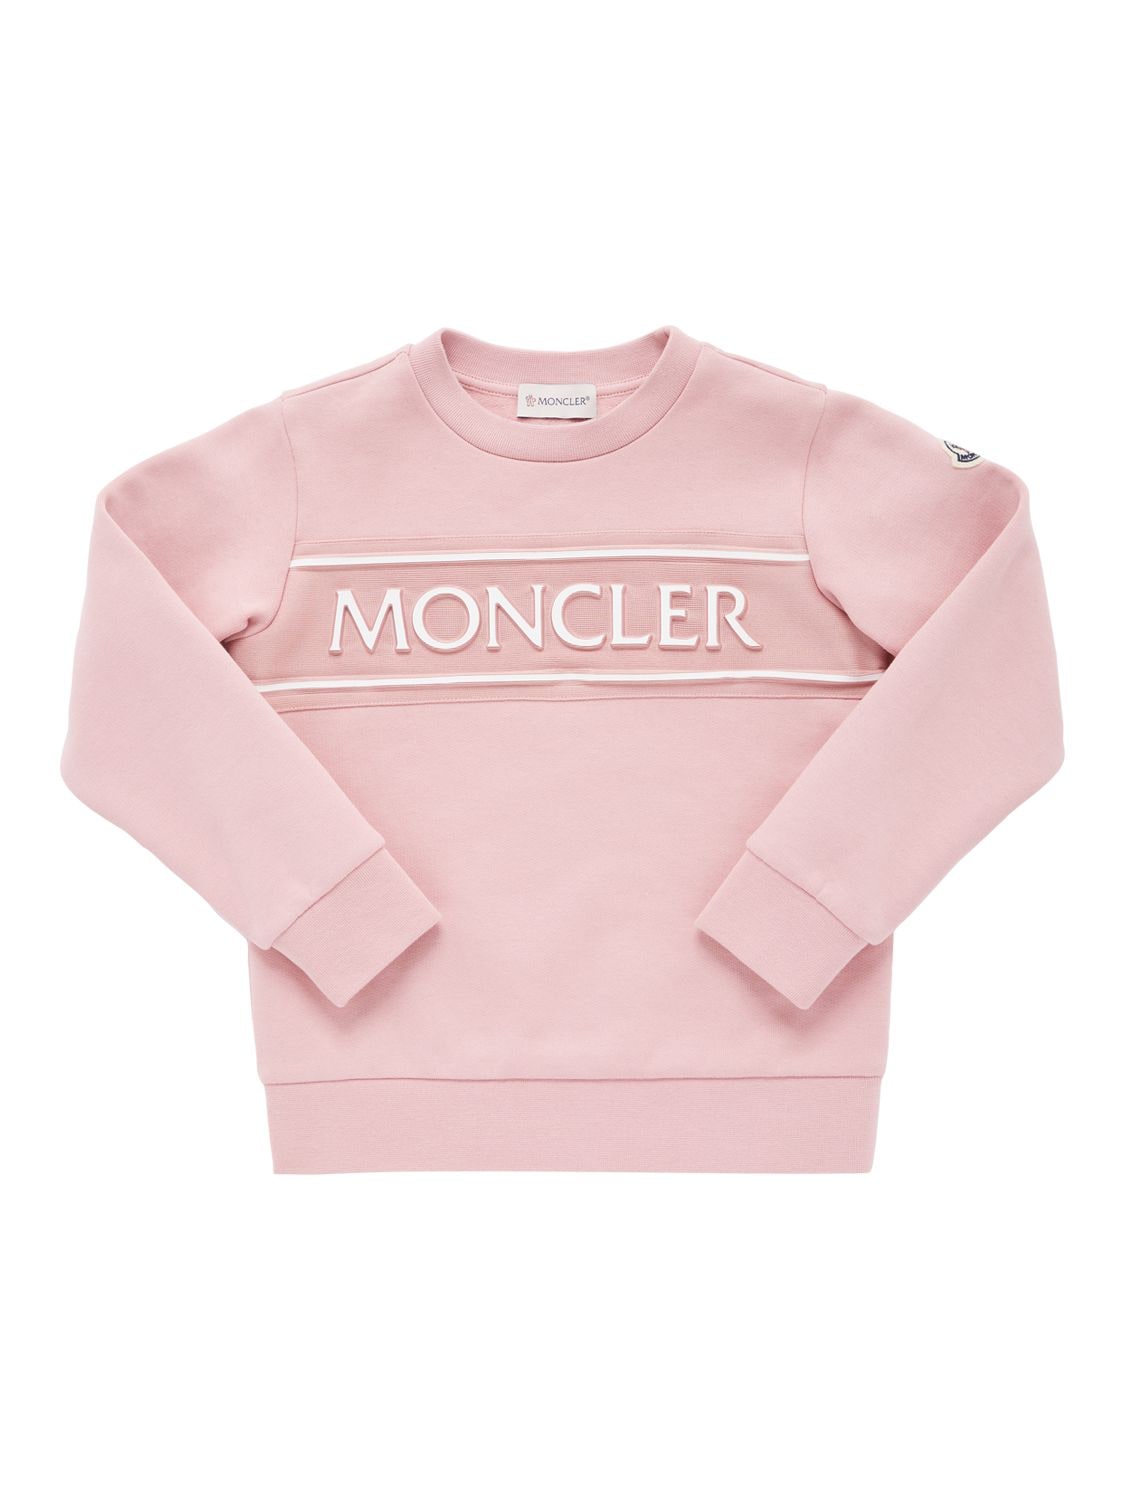 Moncler Kids' Brushed Cotton Sweatshirt In Pink